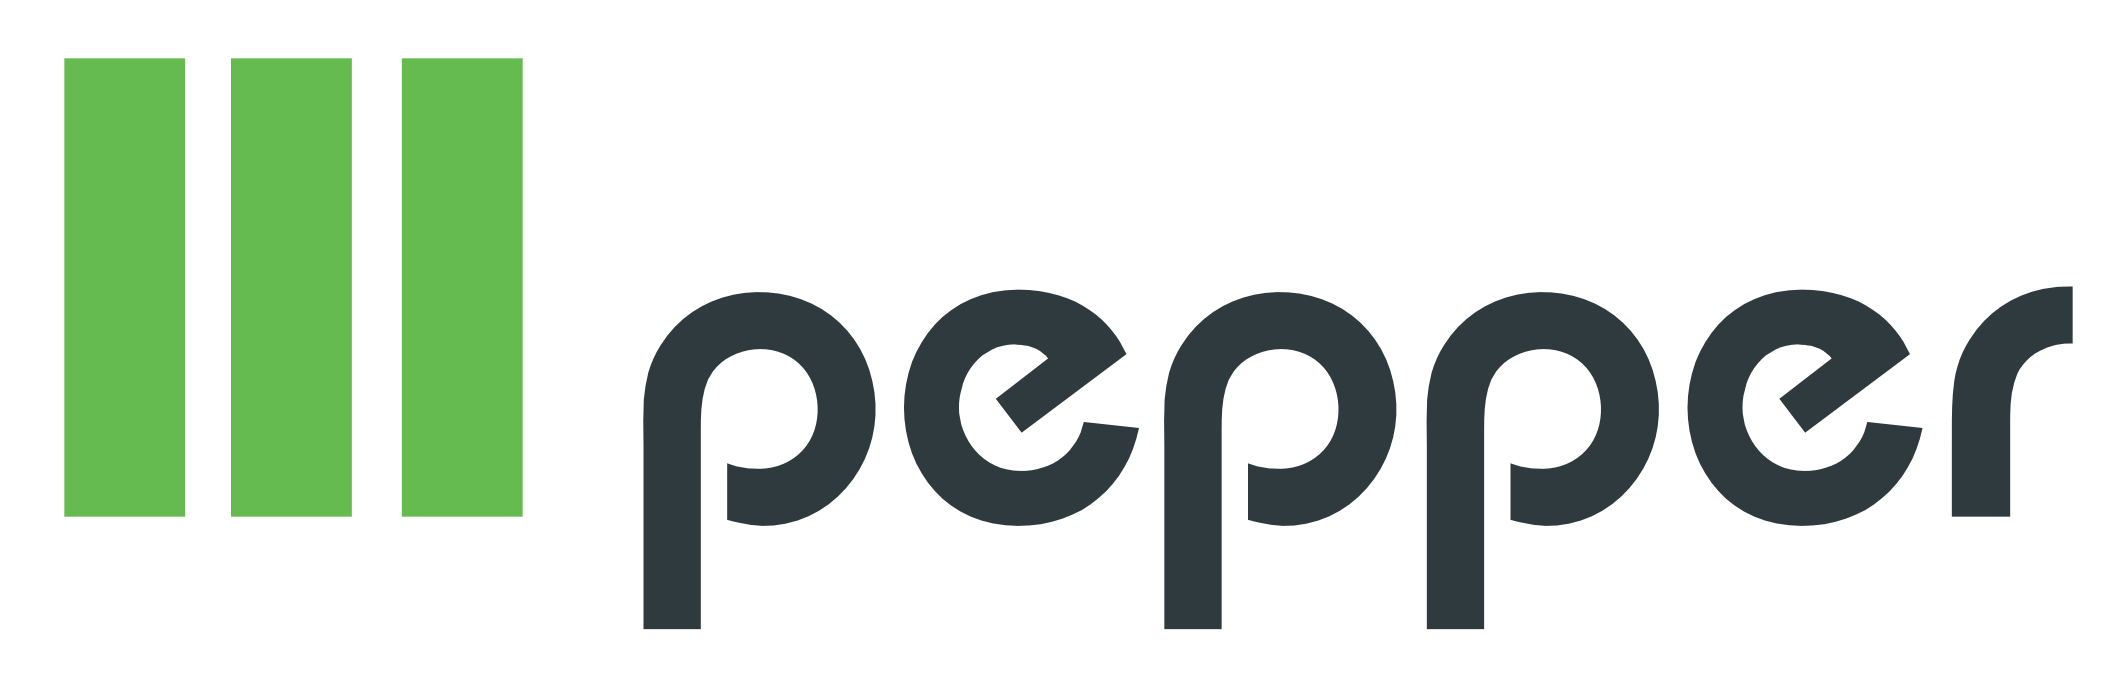 pepper motion Logo